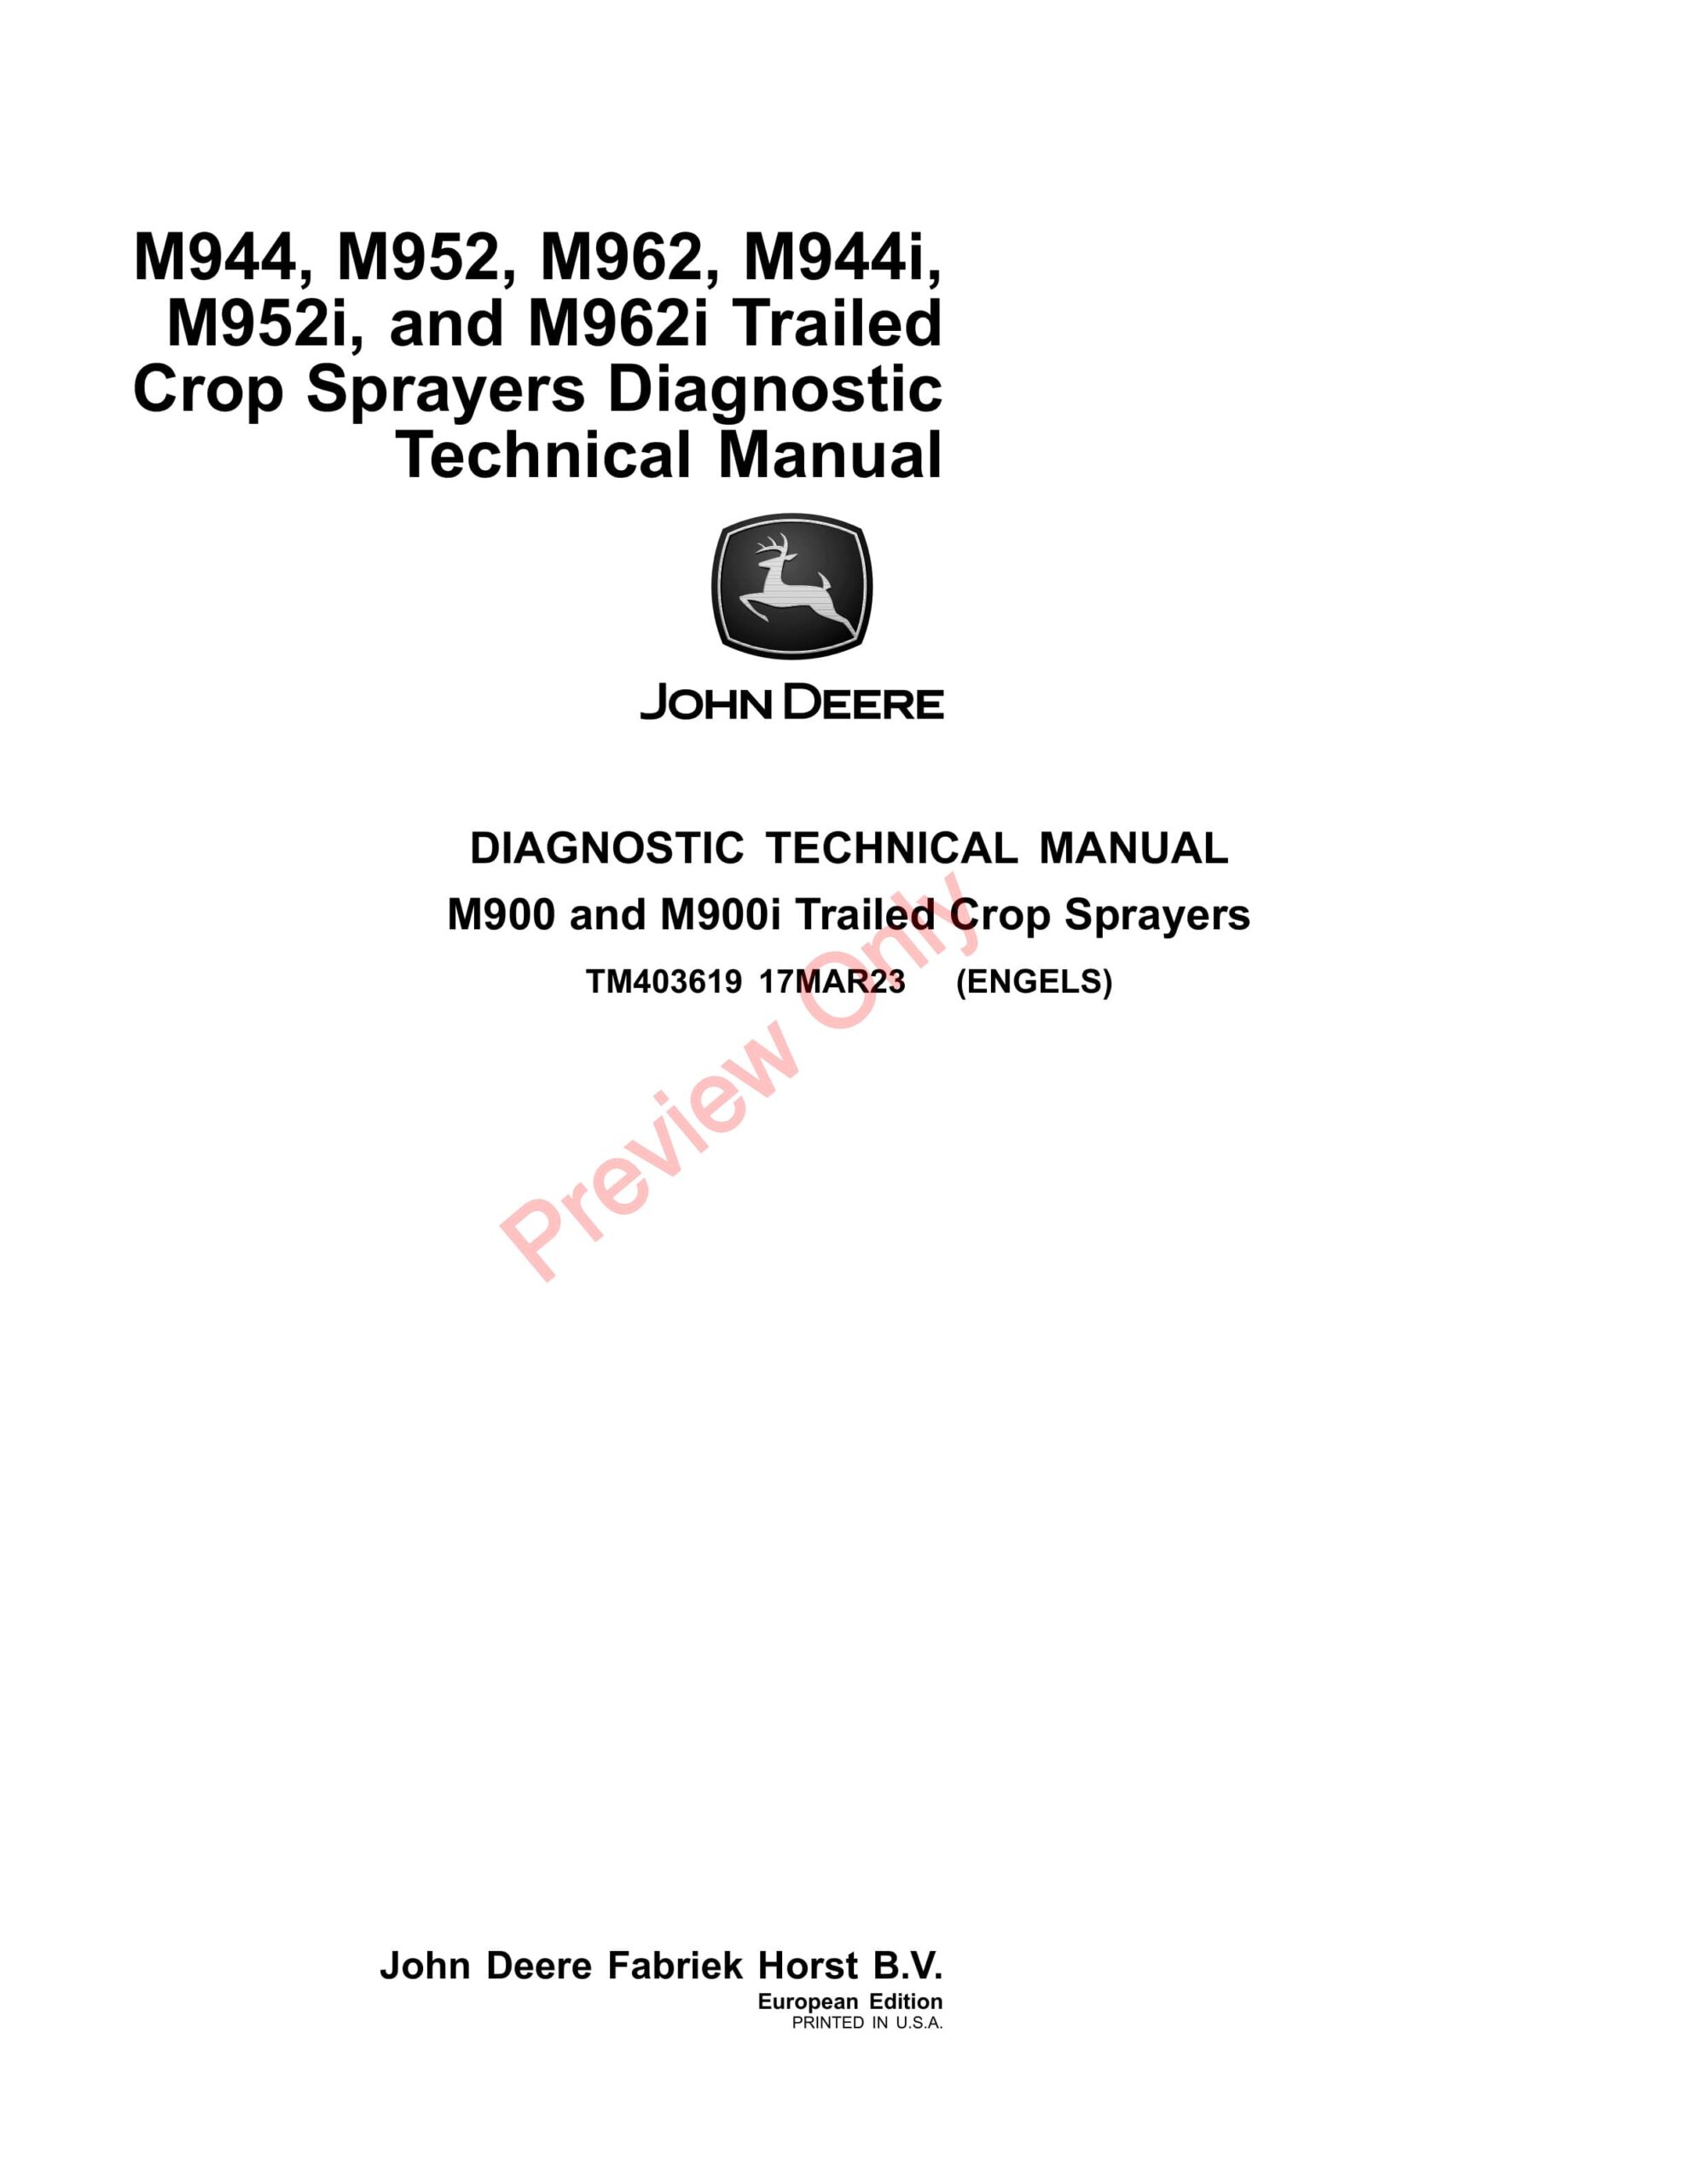 John Deere M944, M952, M962, M944i, M952i and M962i Trailed Crop Sprayers Diagnostic Technical Manual TM403619 17MAR23-1